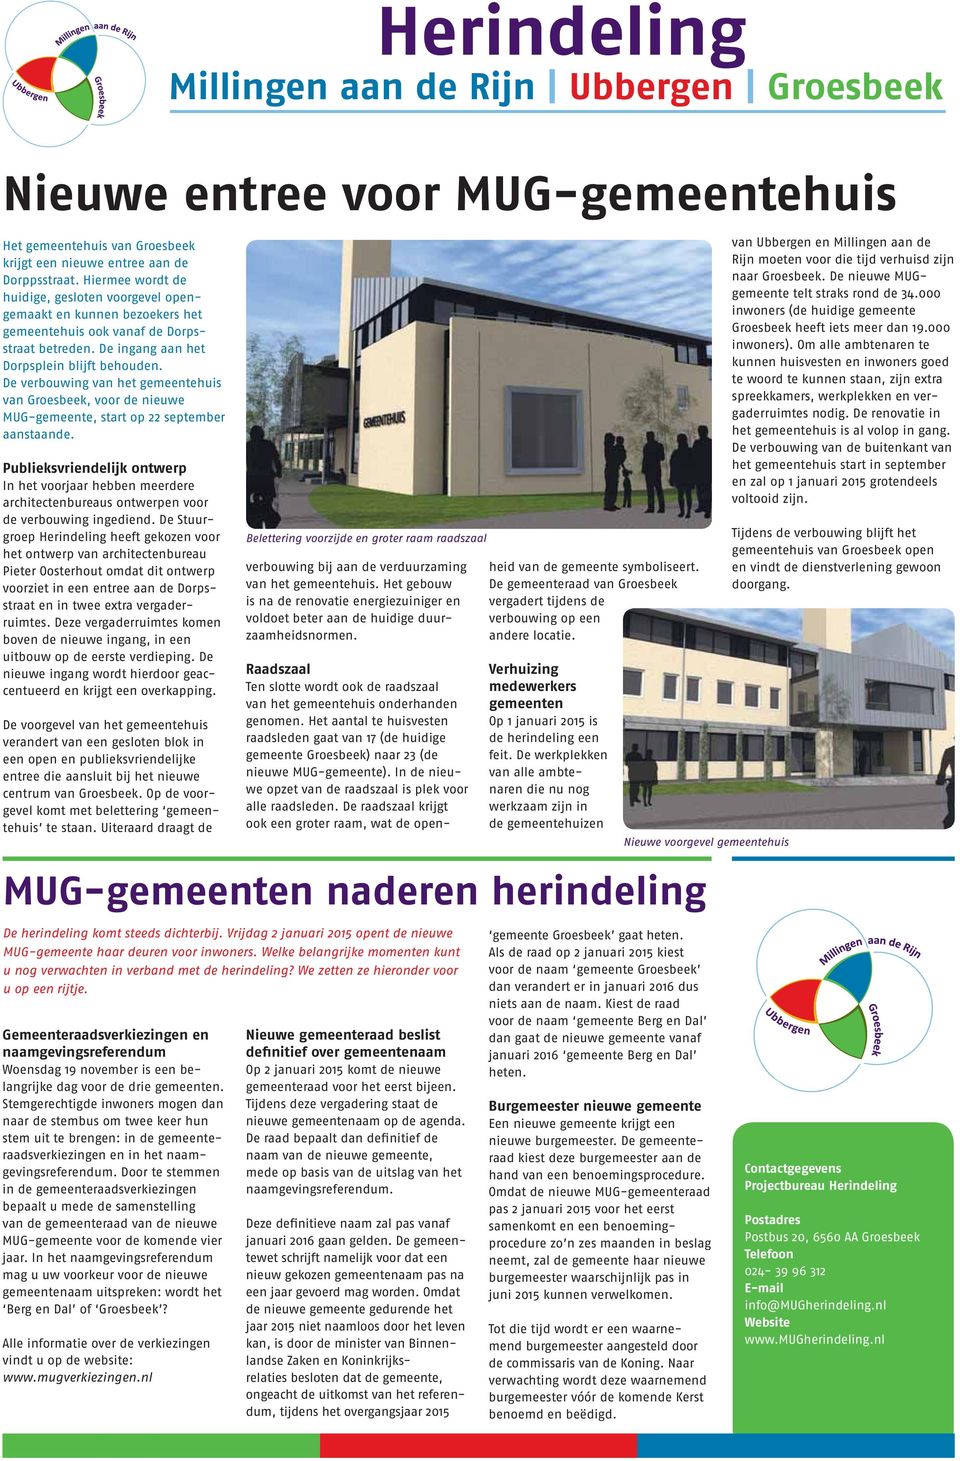 De verbouwing van het gemeentehuis van Groesbeek, voor de nieuwe MUG-gemeente, start op 22 september aanstaande.